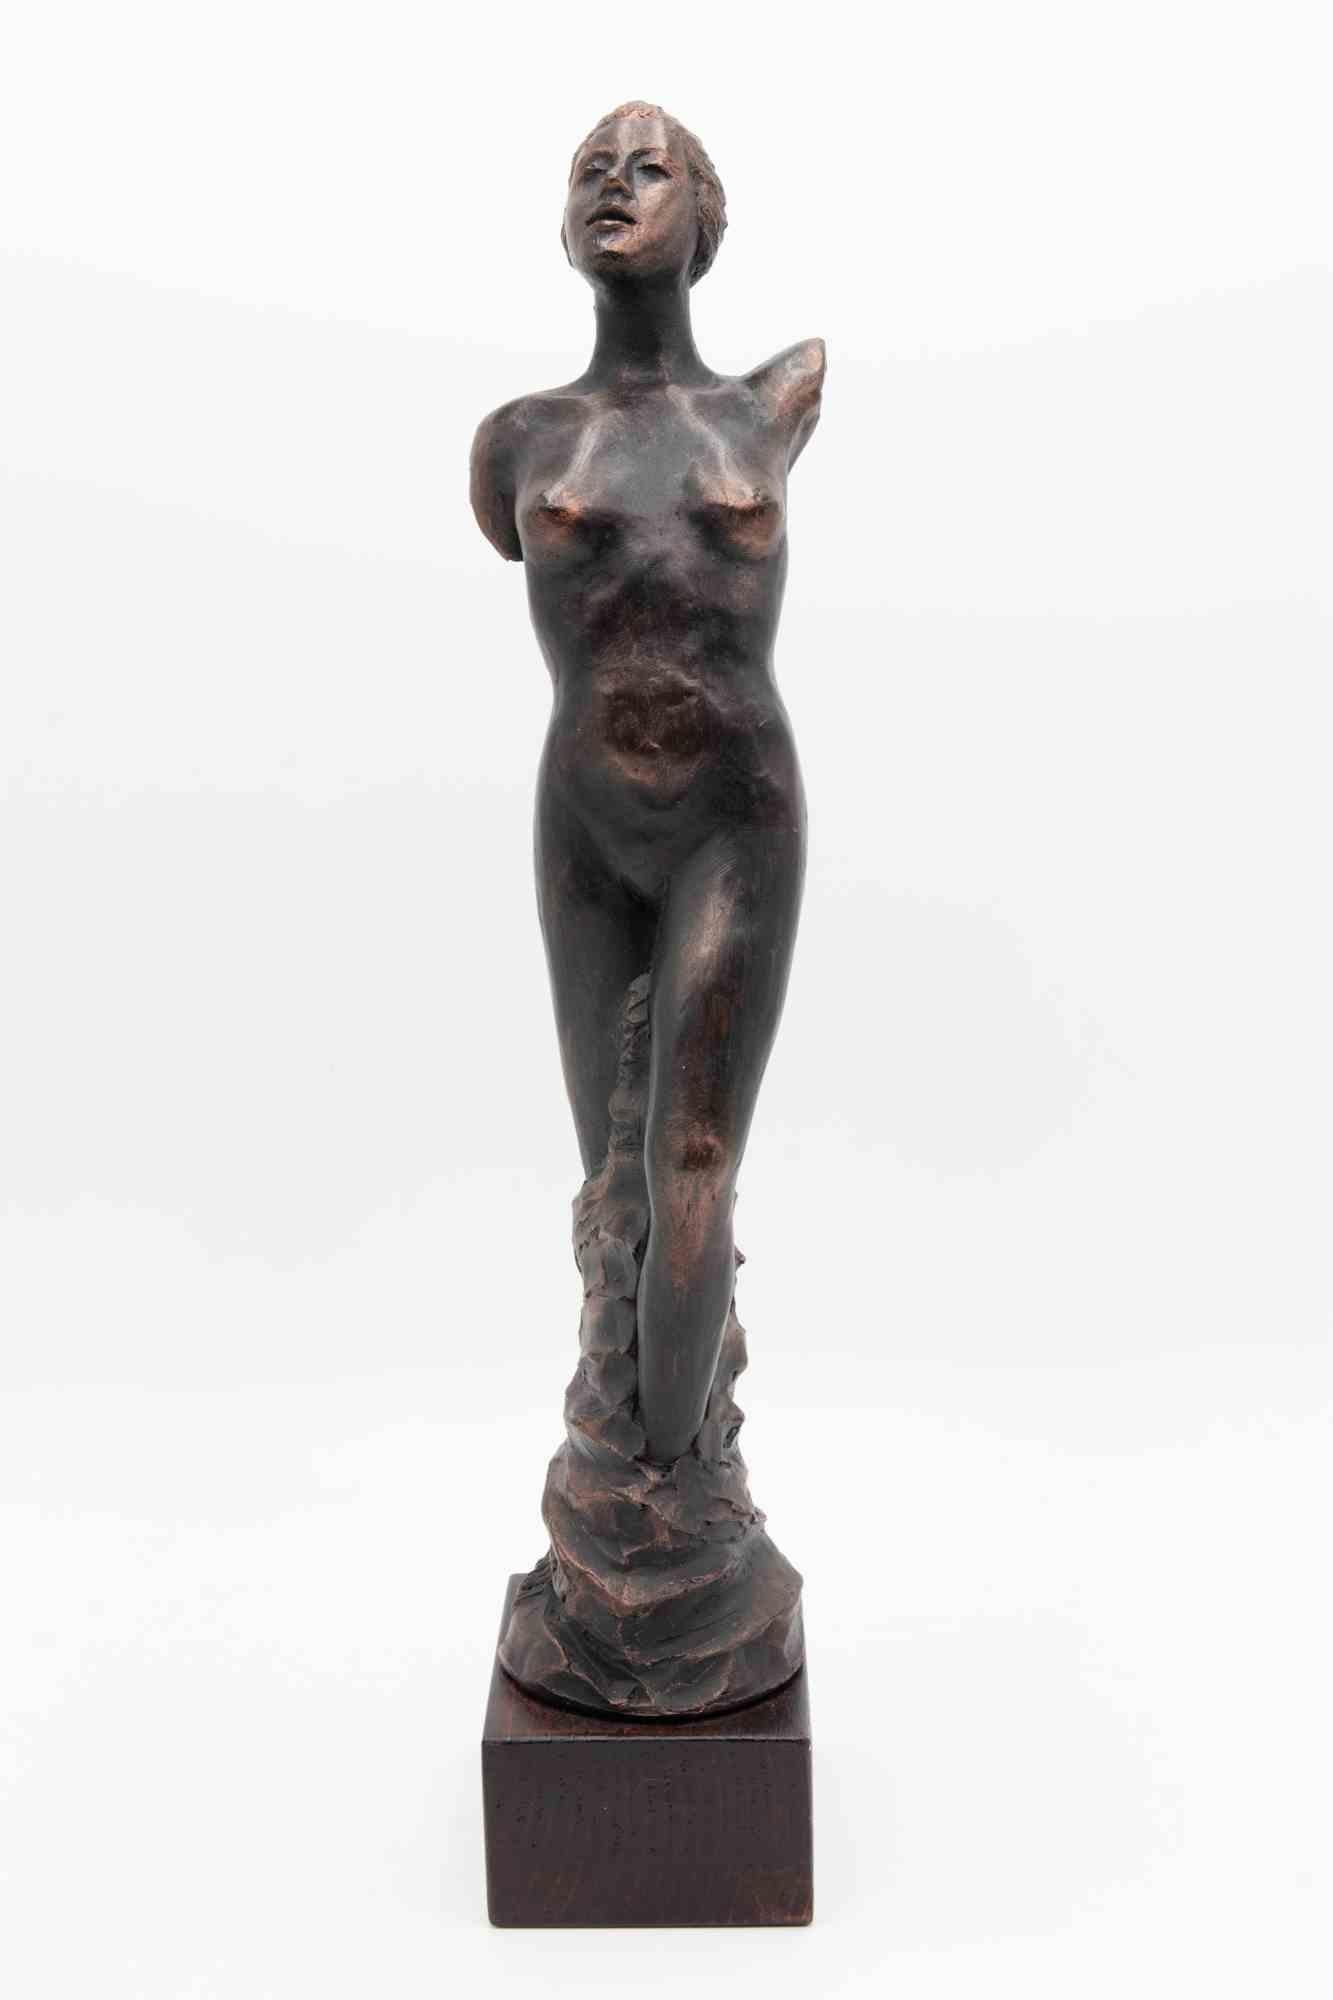 Die Statue einer Frau ist eine Skulptur von Fabrizio Savi aus den 2000er Jahren. 

Weiblicher Körper mit Blick nach oben. Die Beine der Frau sind fest mit ihrem Bronzesockel am Boden verbunden und skizziert.

43x12 cm, inklusive